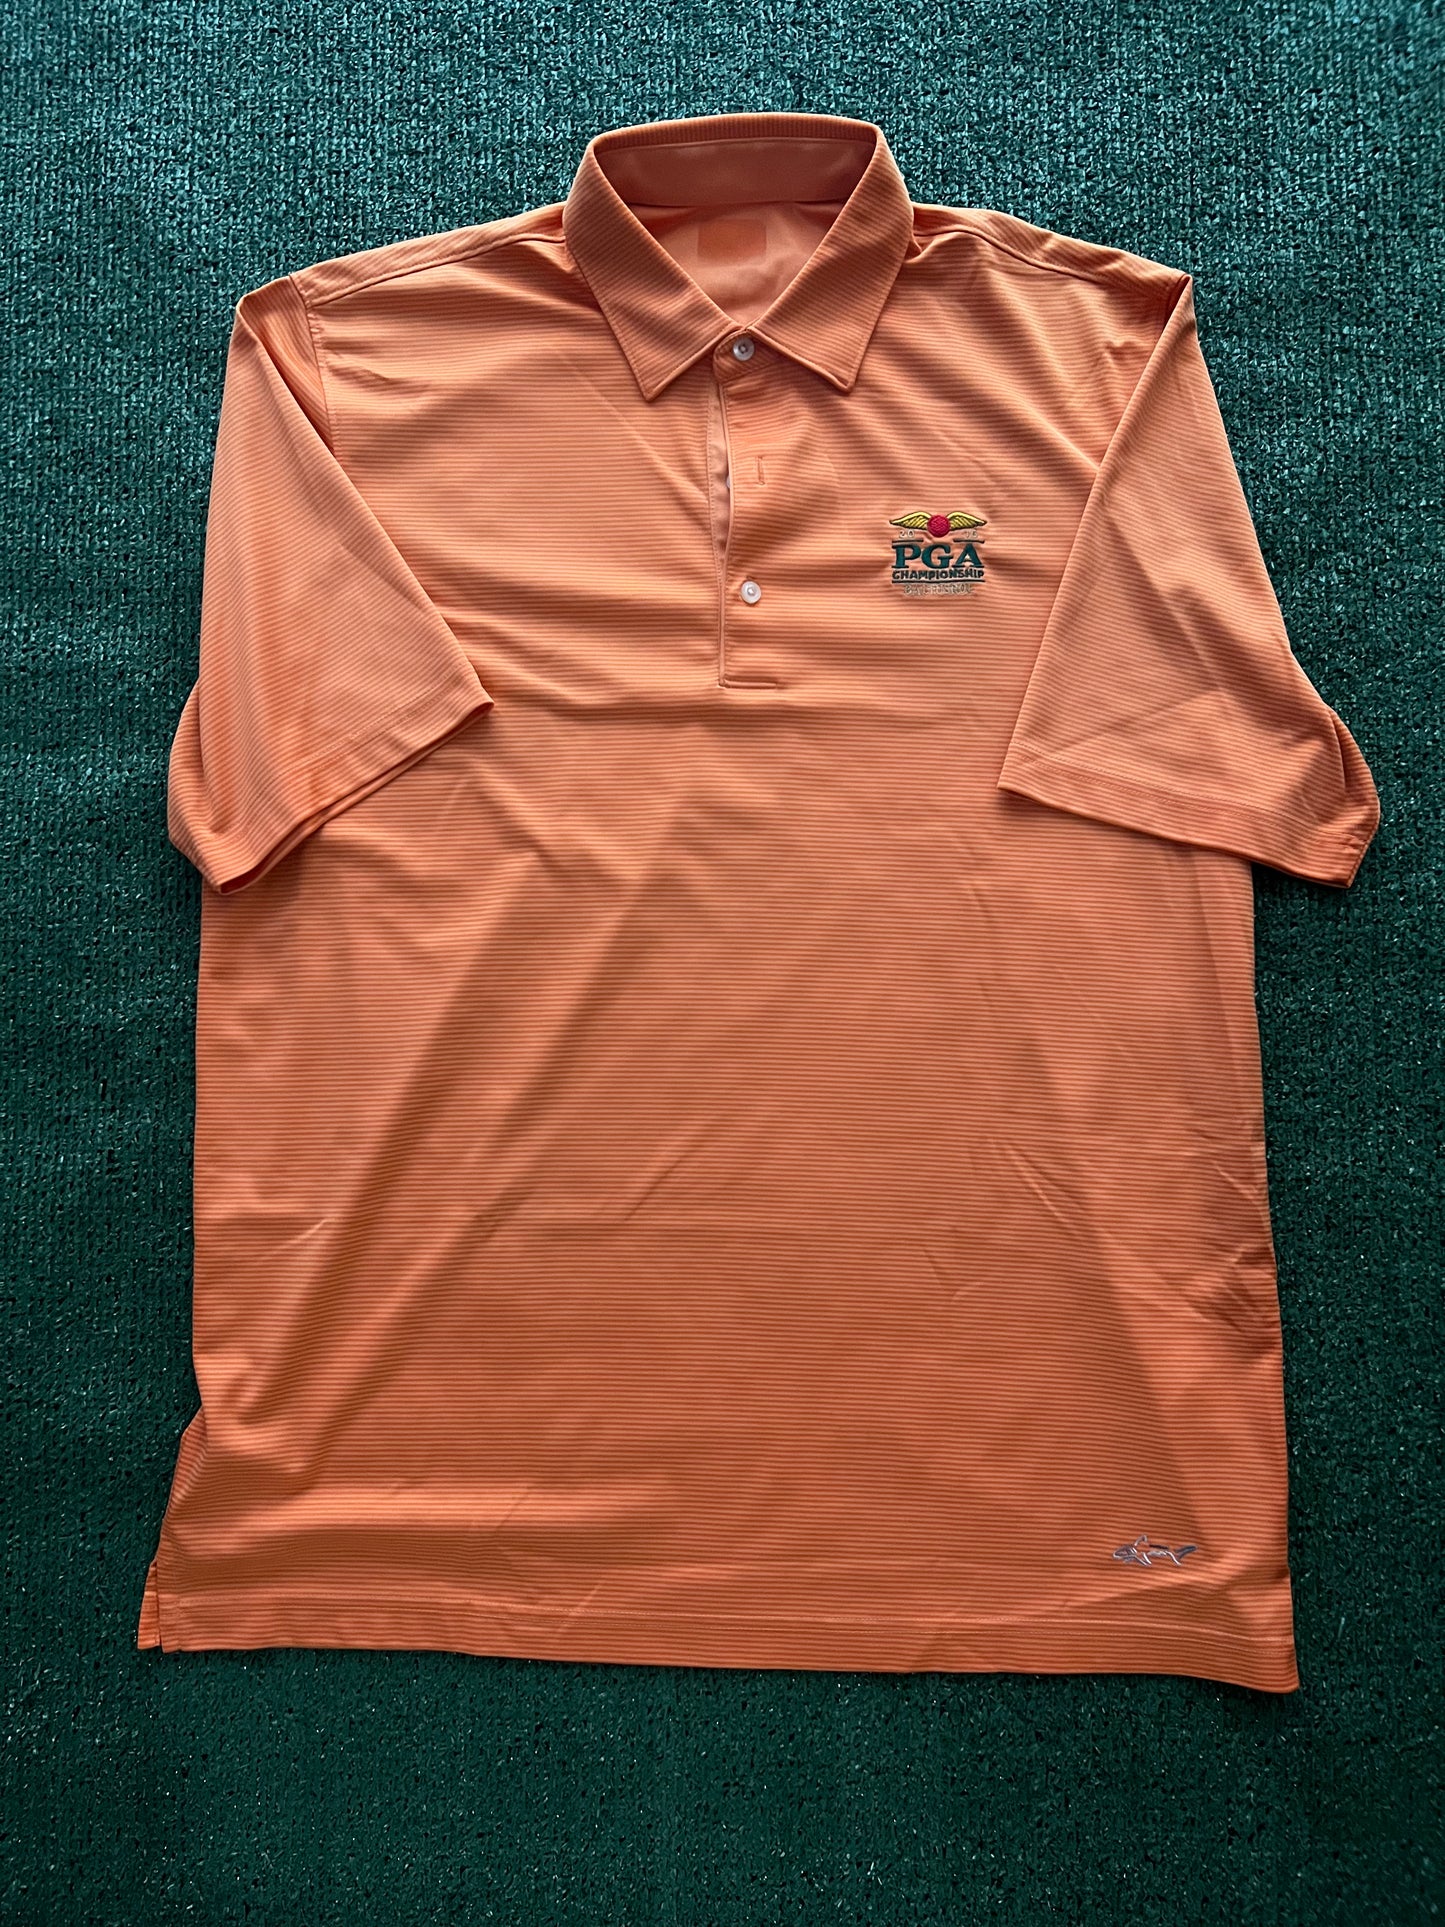 Orange 2016 PGA Polo Shirt (Large)